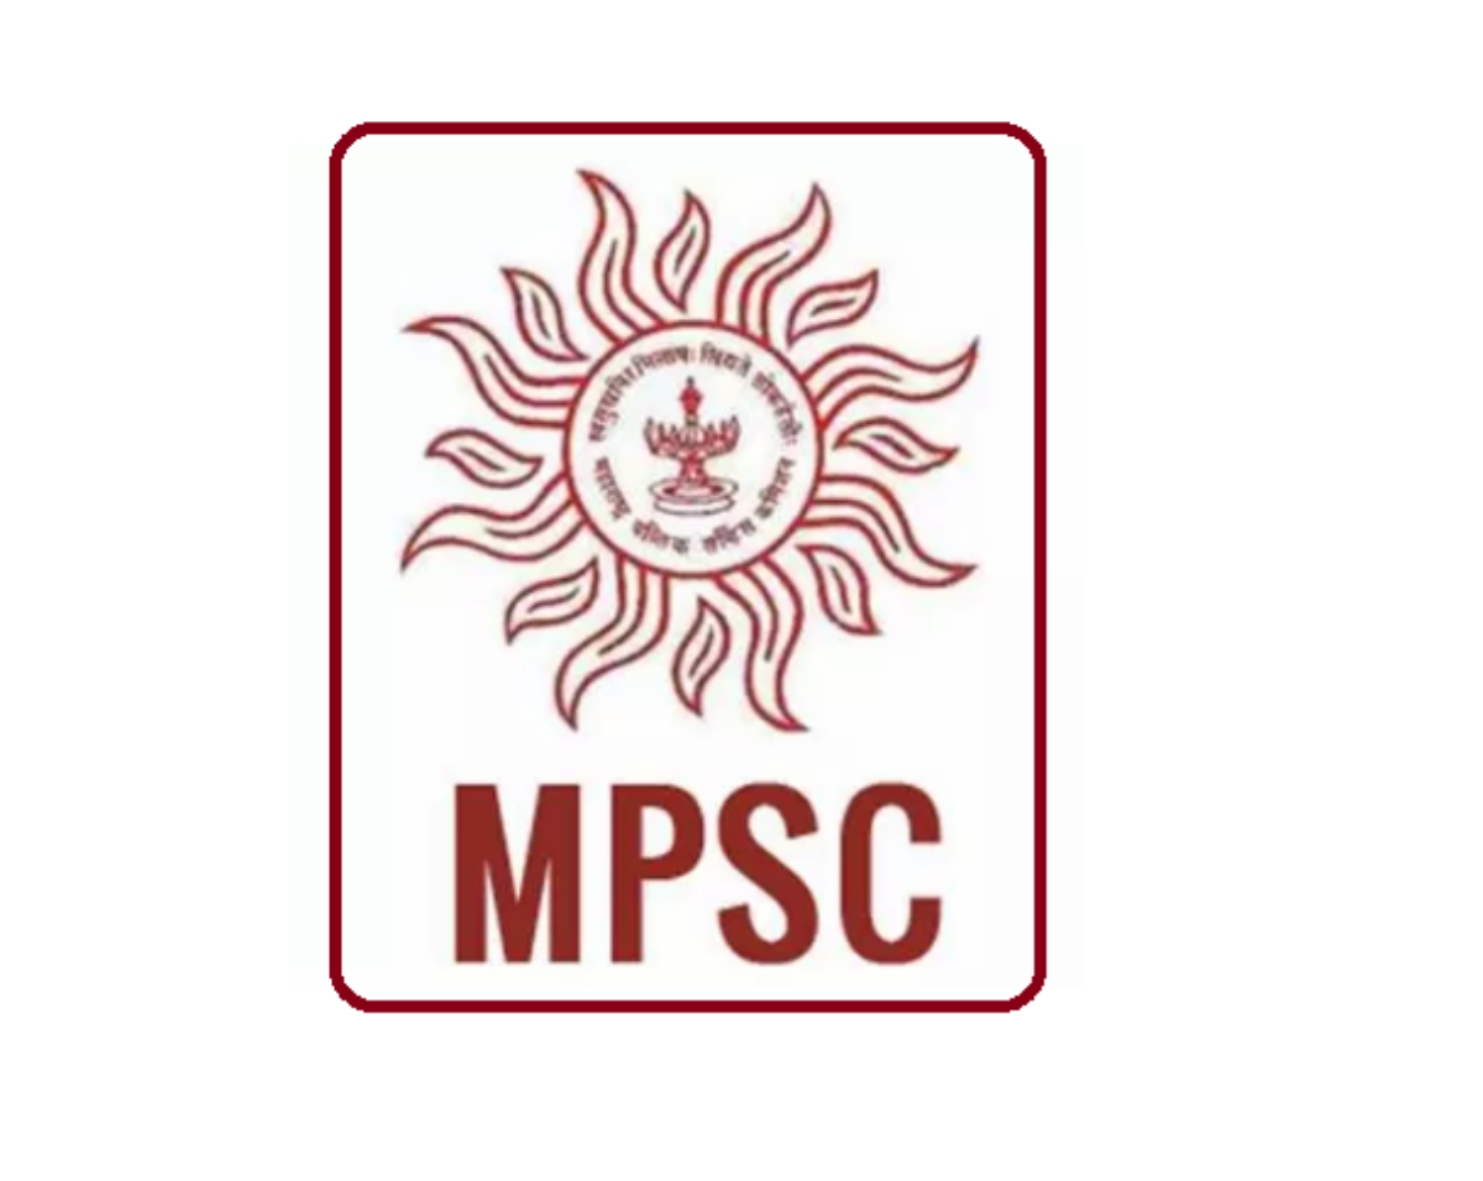 MPSC ची परीक्षा कोरोनाच्या सावटामुळे पुन्हा लांबणीवर? विद्यार्थ्यांच्या चिंतेत वाढ